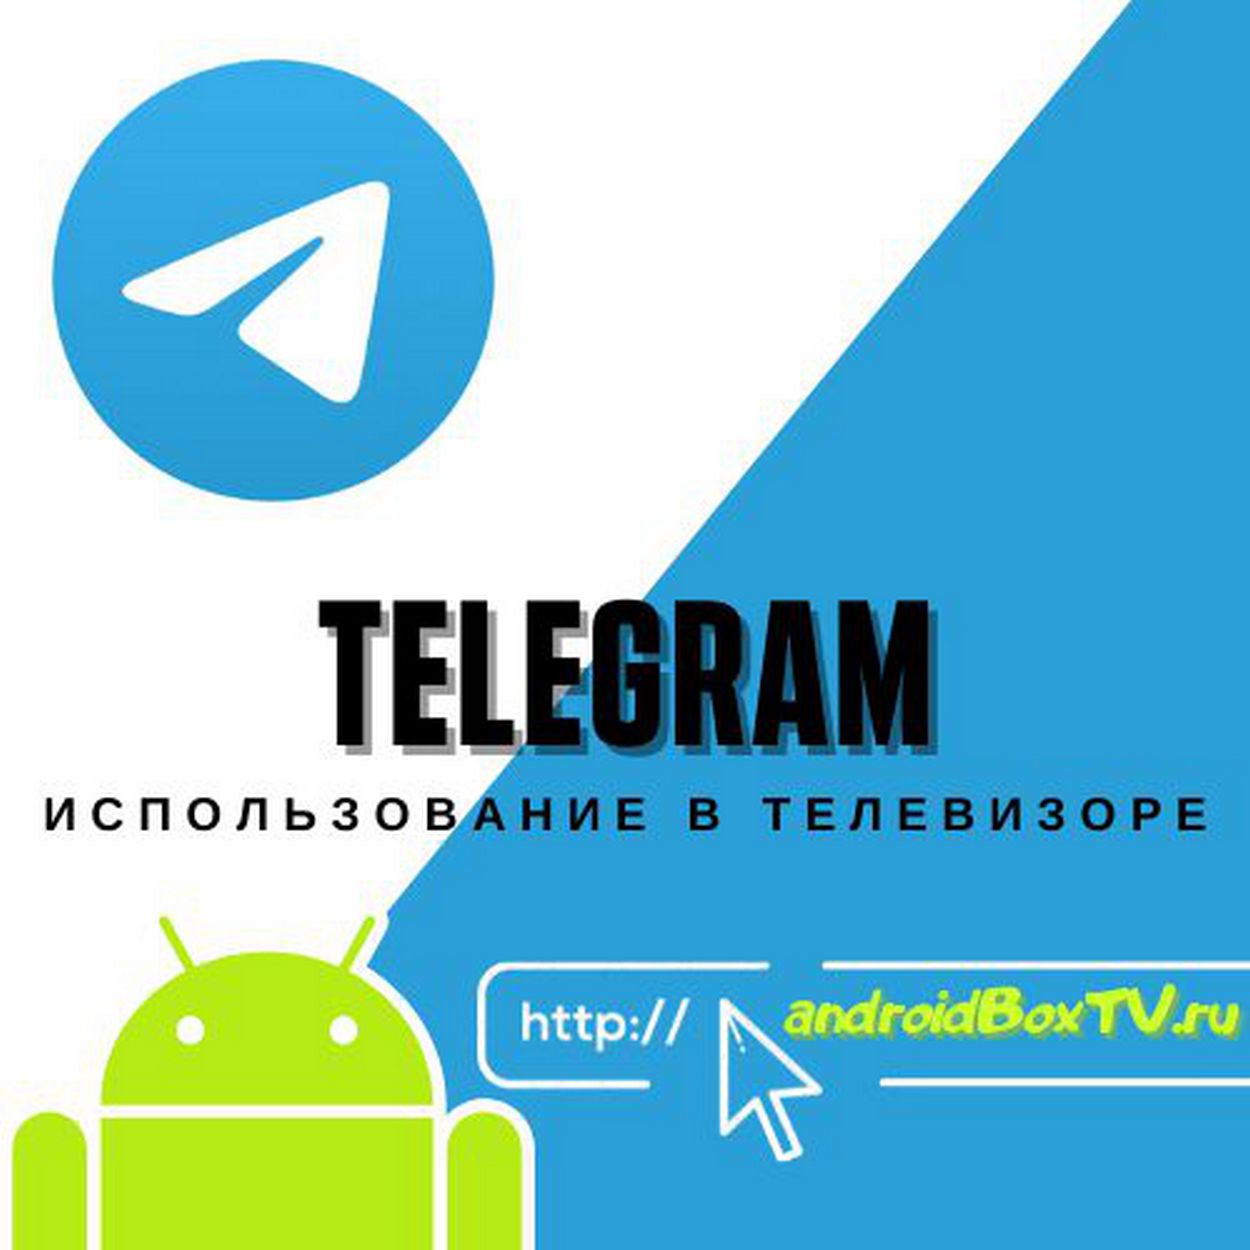 Программы для андроид тв телеграмм (120) фото